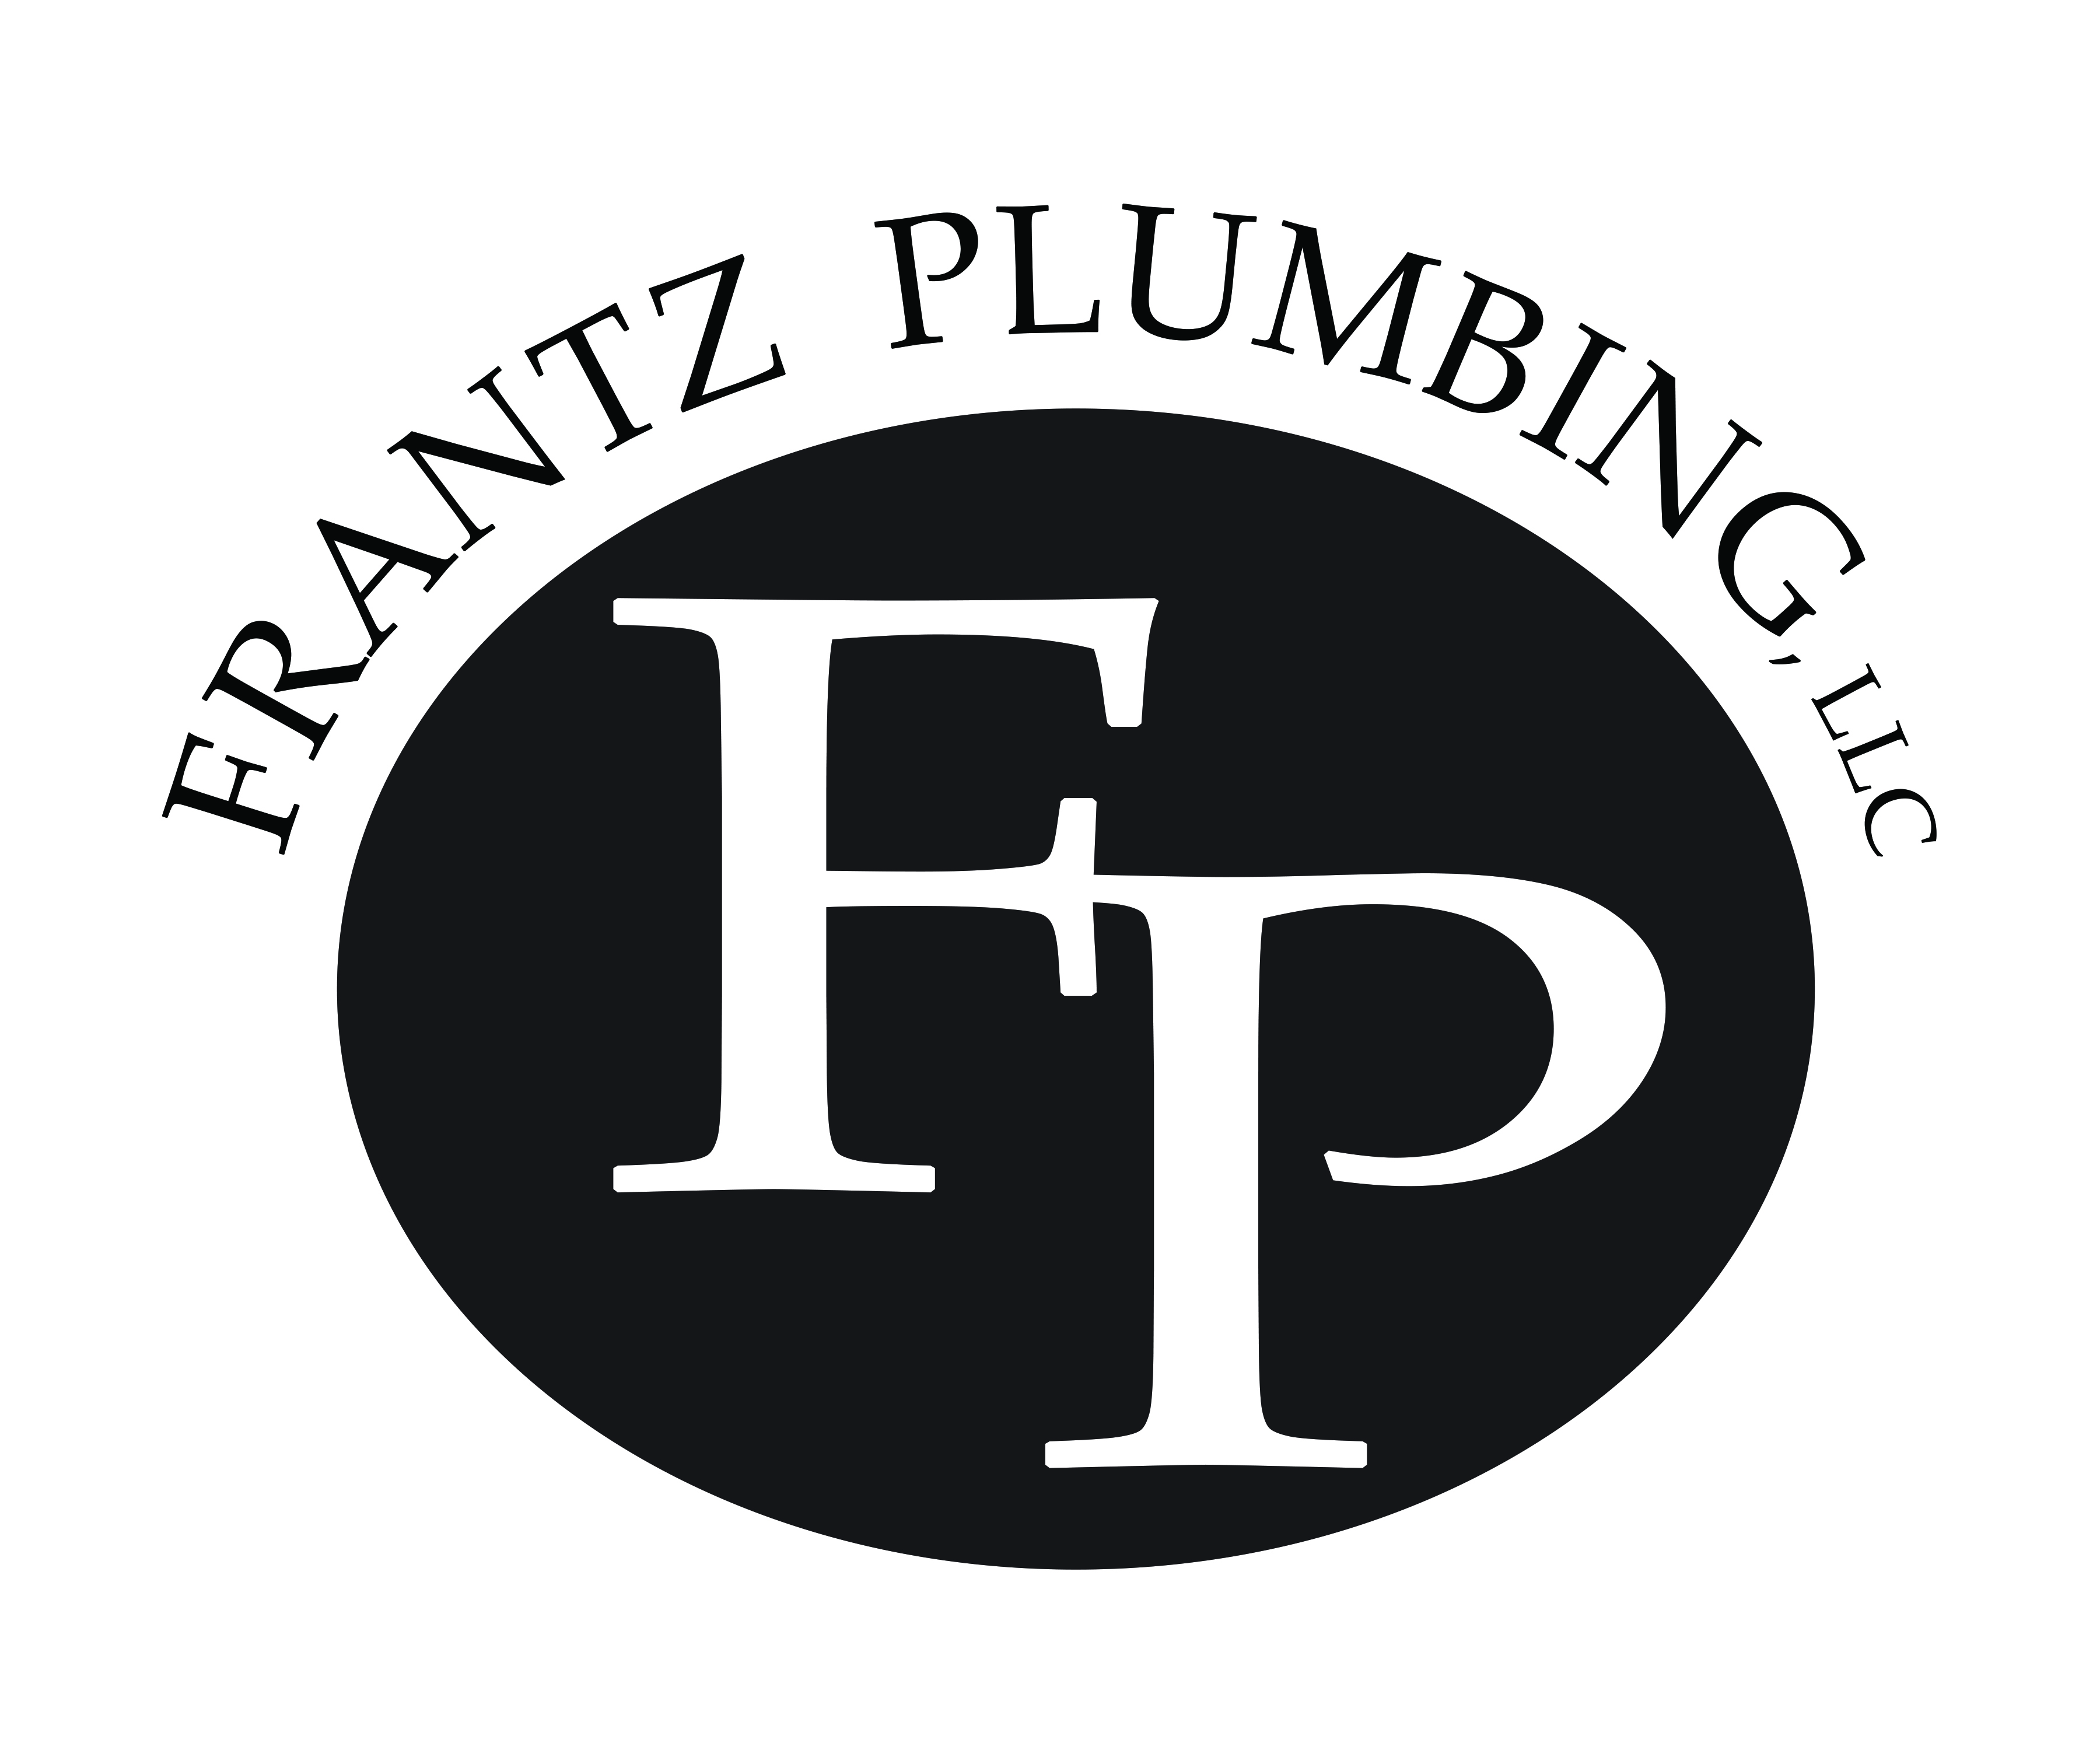 Frantz Plumbing, LLC